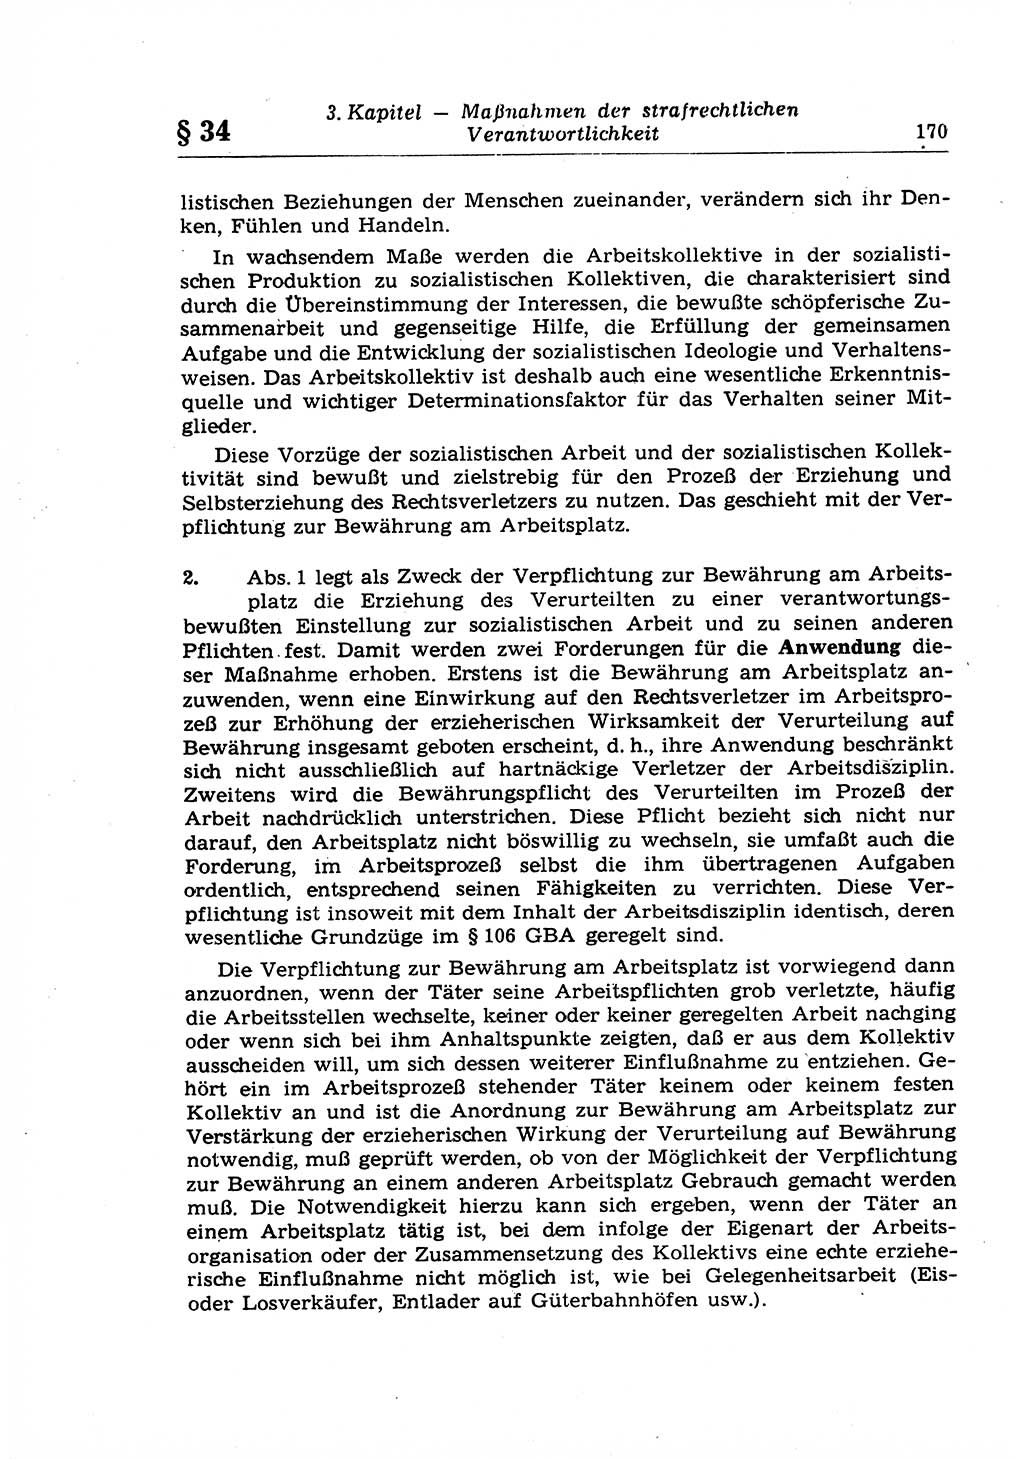 Strafrecht der Deutschen Demokratischen Republik (DDR), Lehrkommentar zum Strafgesetzbuch (StGB), Allgemeiner Teil 1969, Seite 170 (Strafr. DDR Lehrkomm. StGB AT 1969, S. 170)